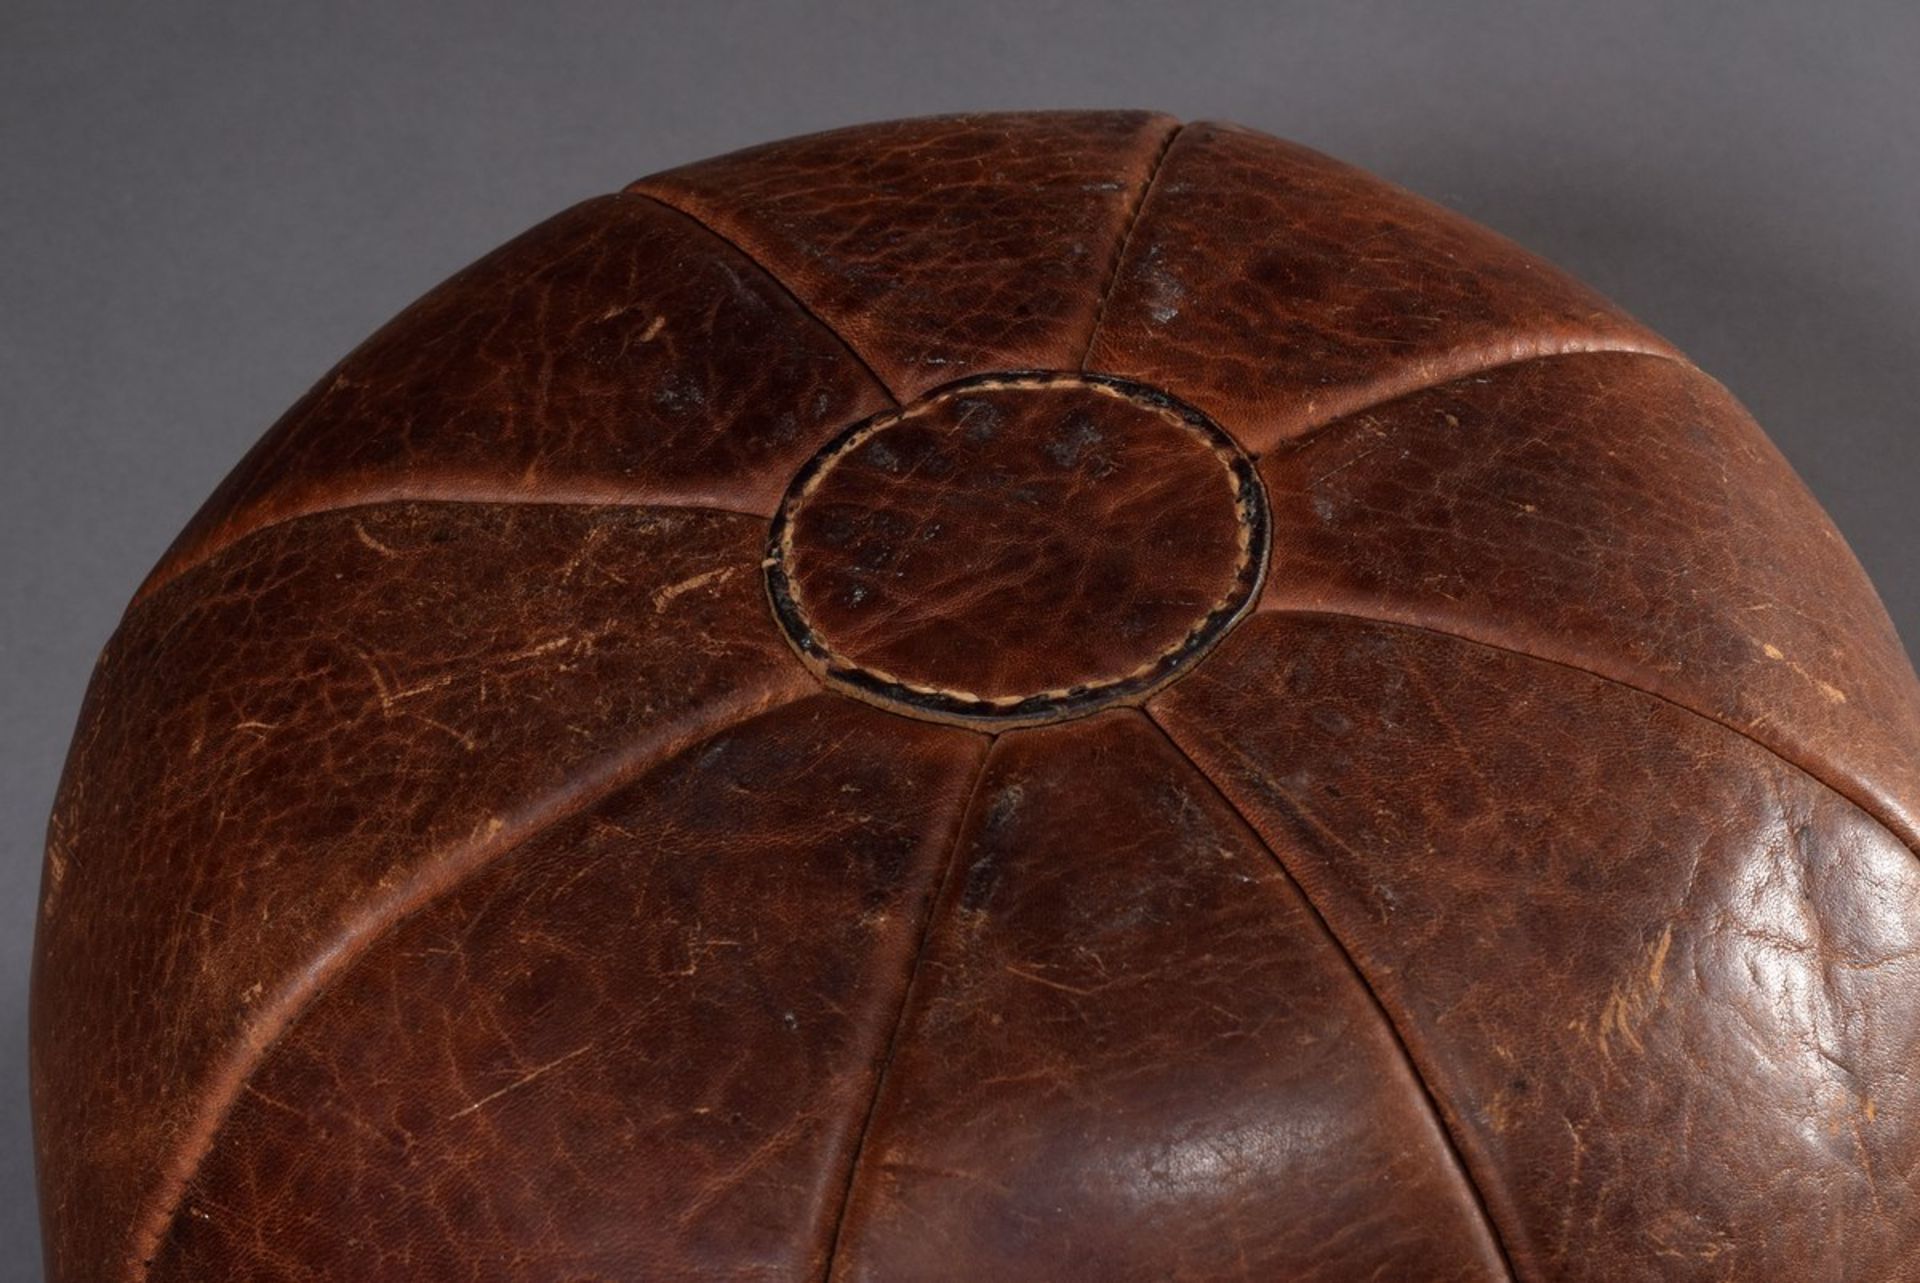 Alter Leder Medizinball mit schöner Patina, braun, Ø ca. 28cm, leichte Gebrauchsspuren - Bild 4 aus 4